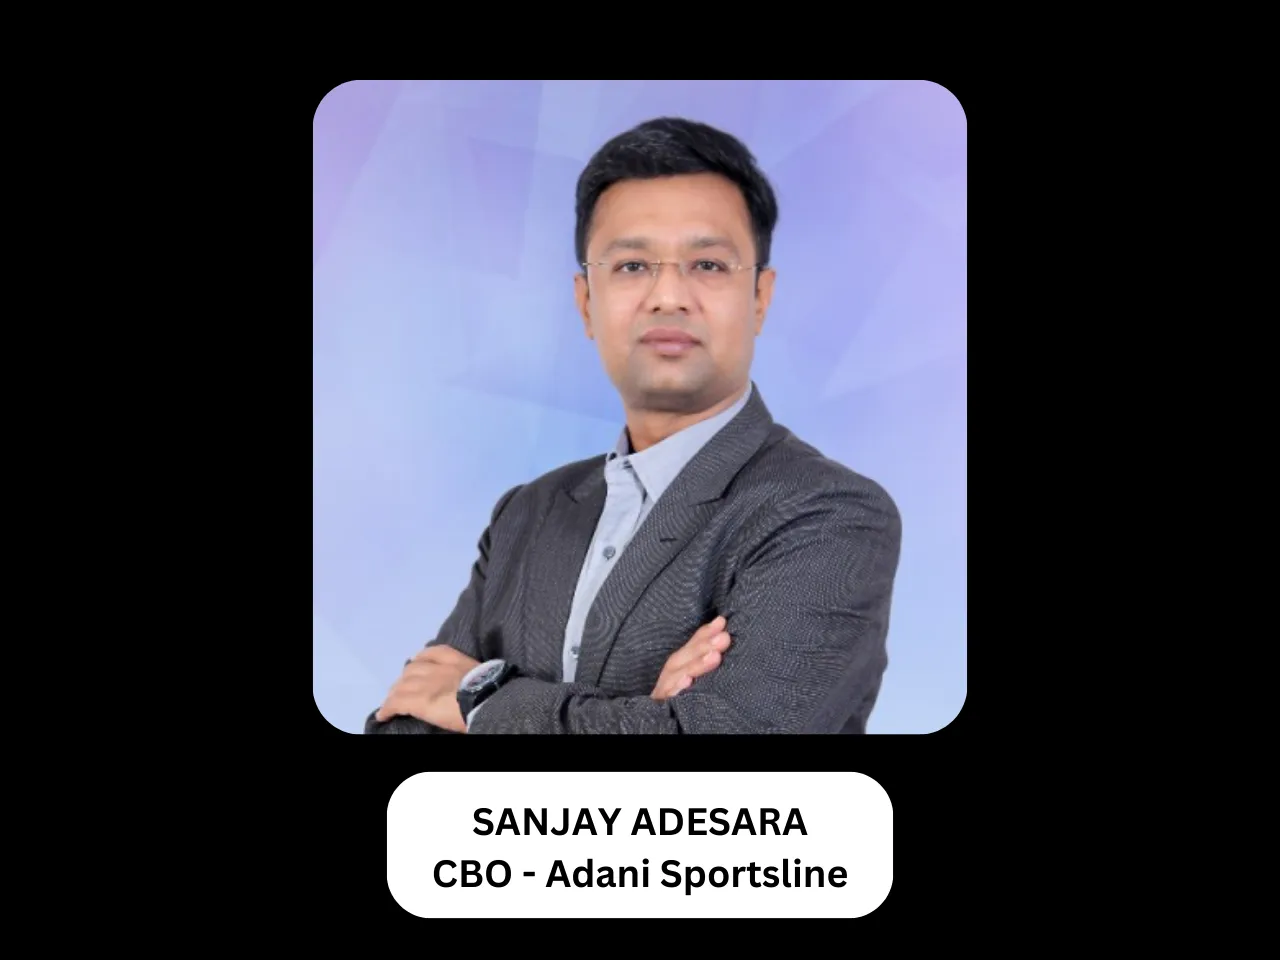 Sanjay Adesara joins Adani Sportsline as CBO